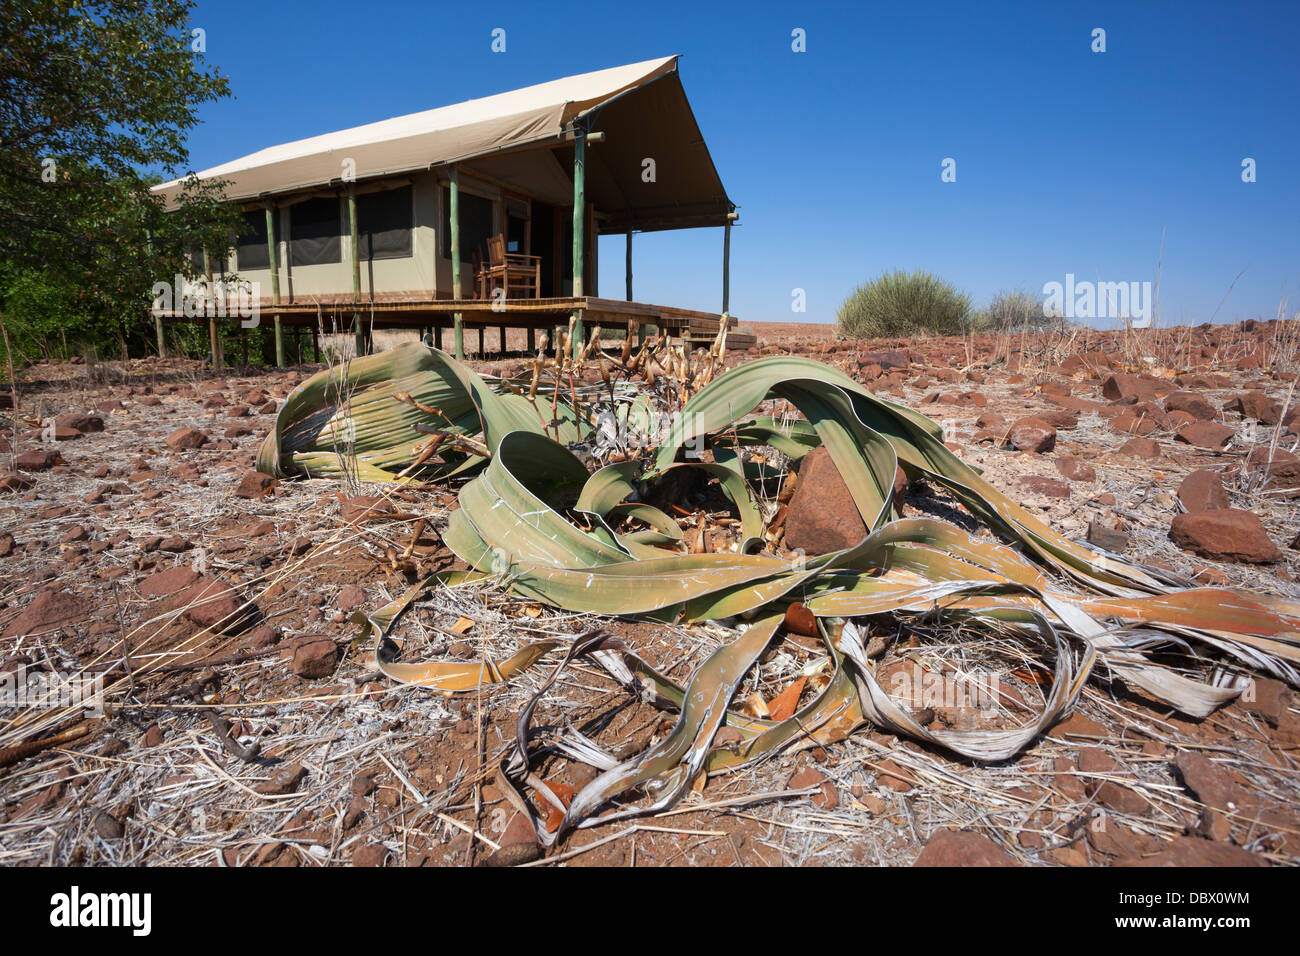 Wilderness safaris por el desierto de lujo tented Camp en el campamento de Rhino con welwitschia, Palmwag, región Kunene, Namibia Foto de stock